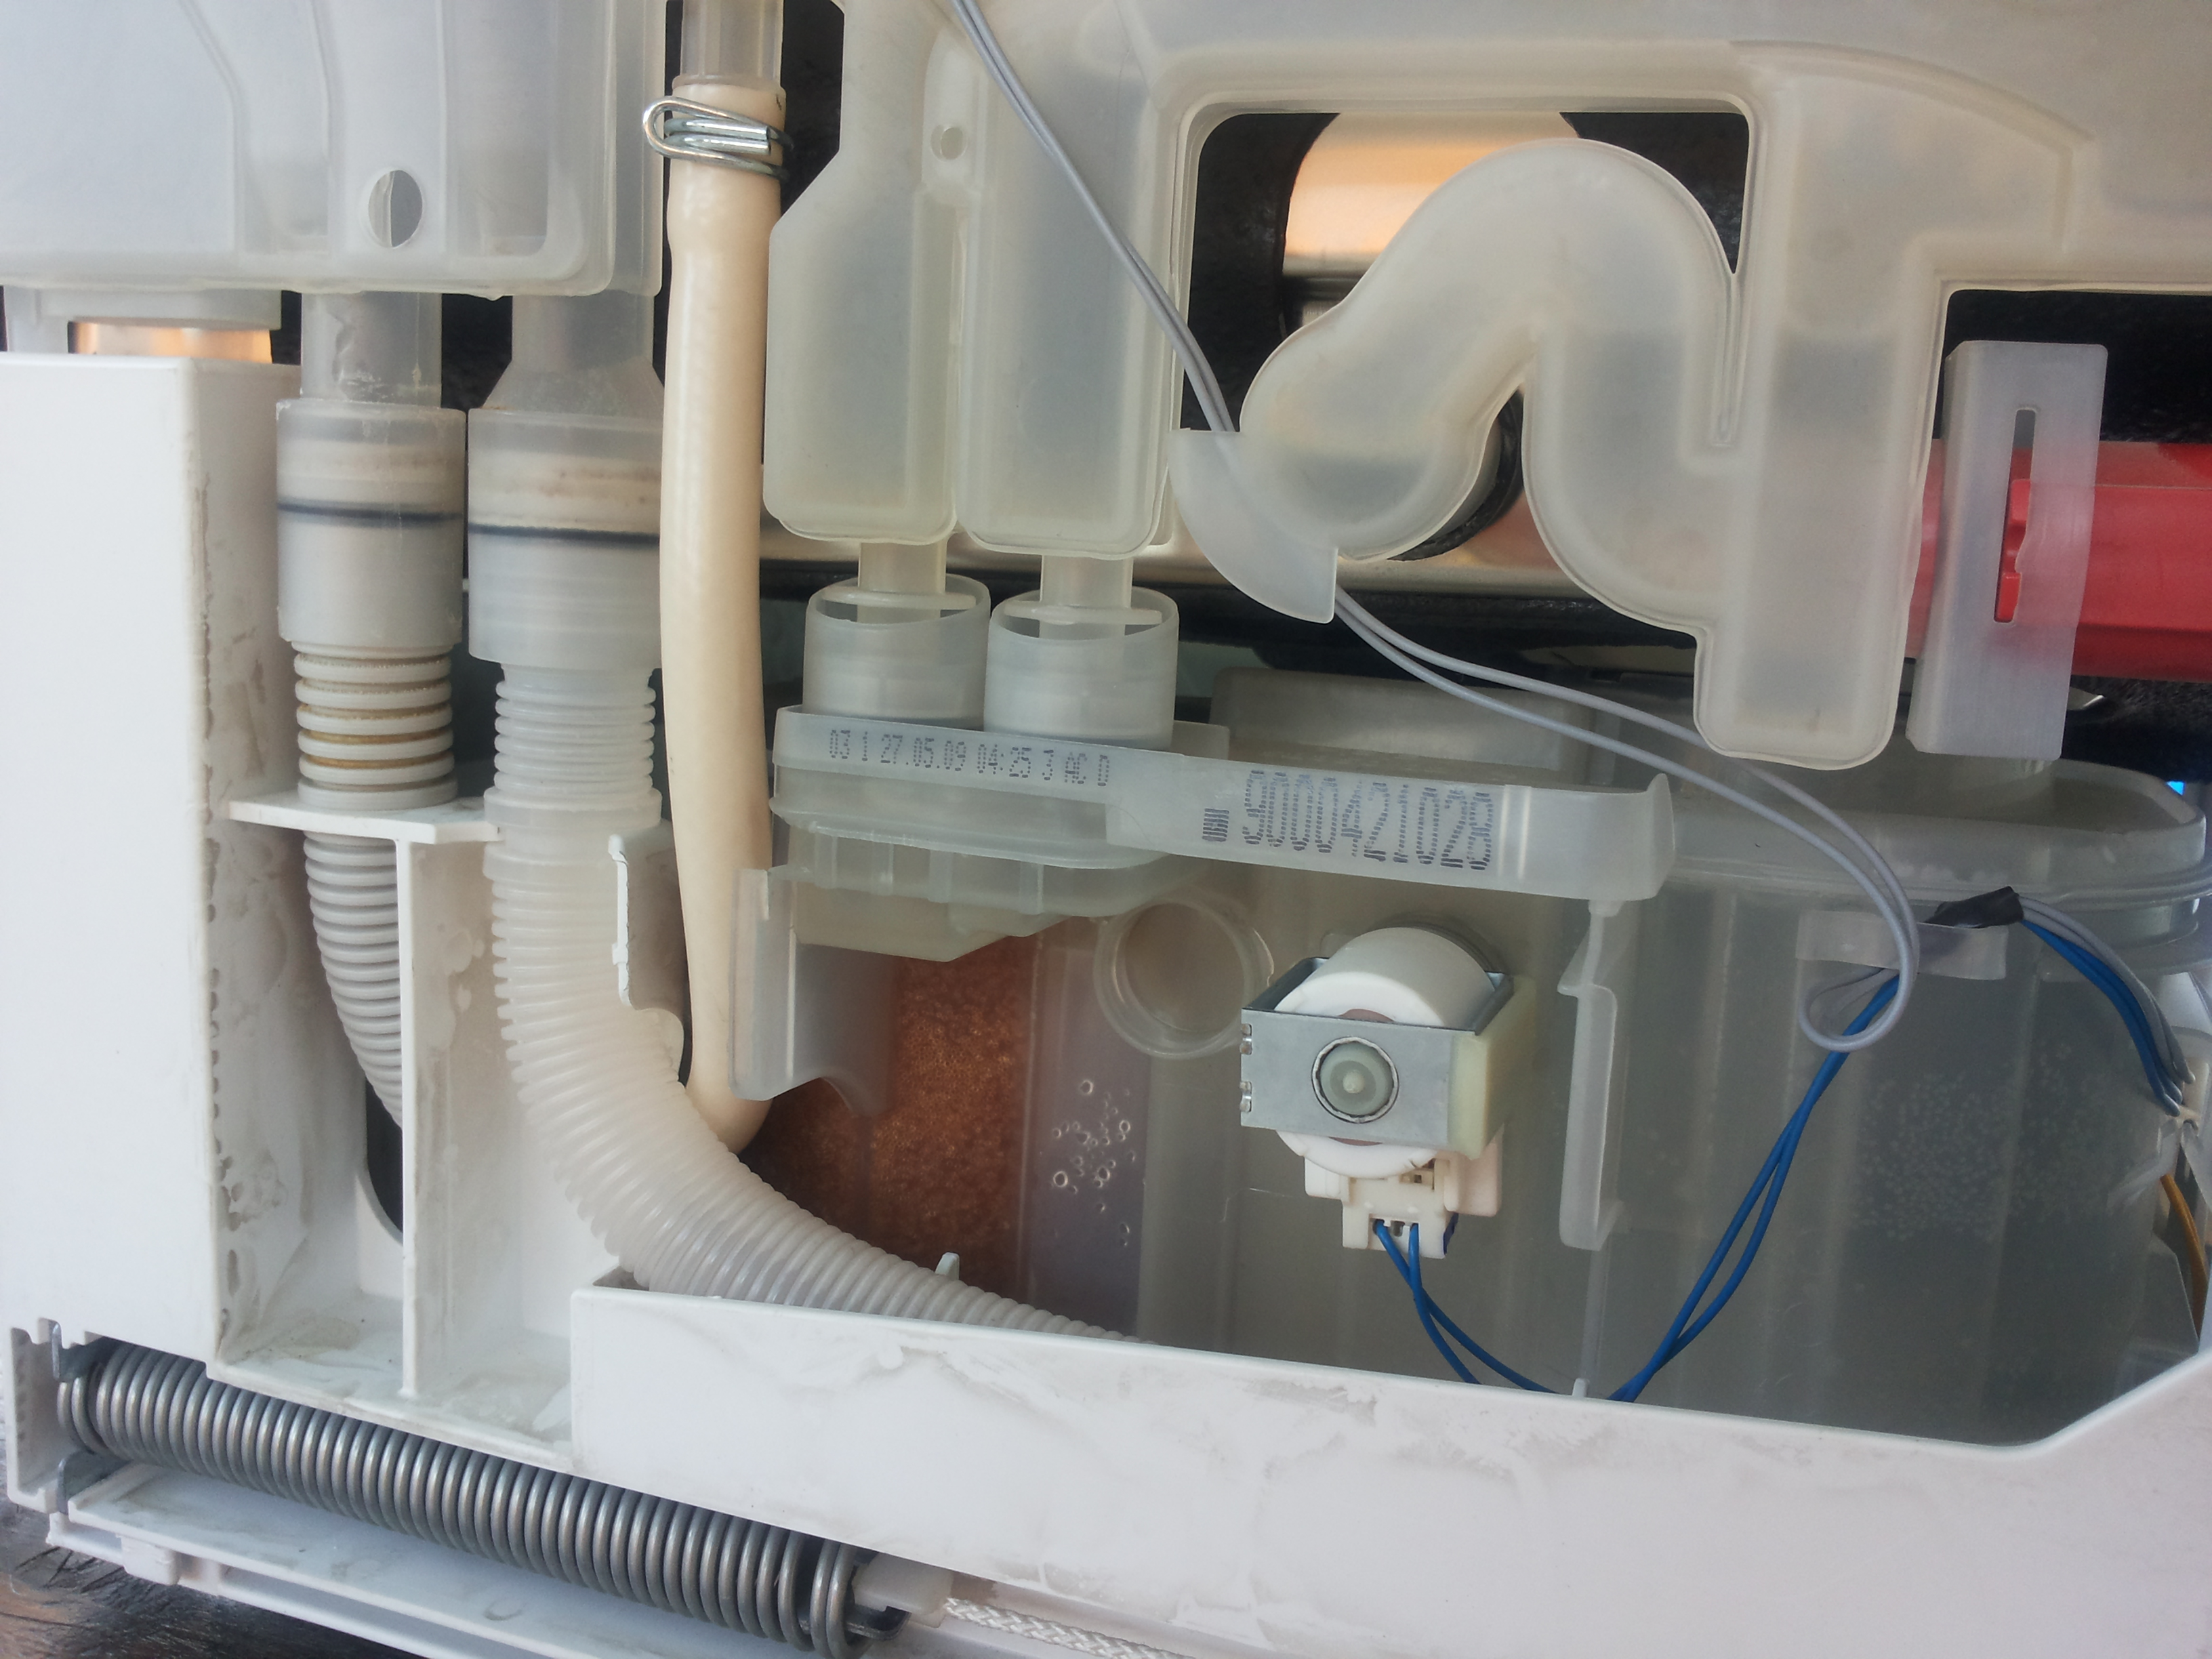 Клапан подачи воды посудомоечной машины Bosch srv55t03eu